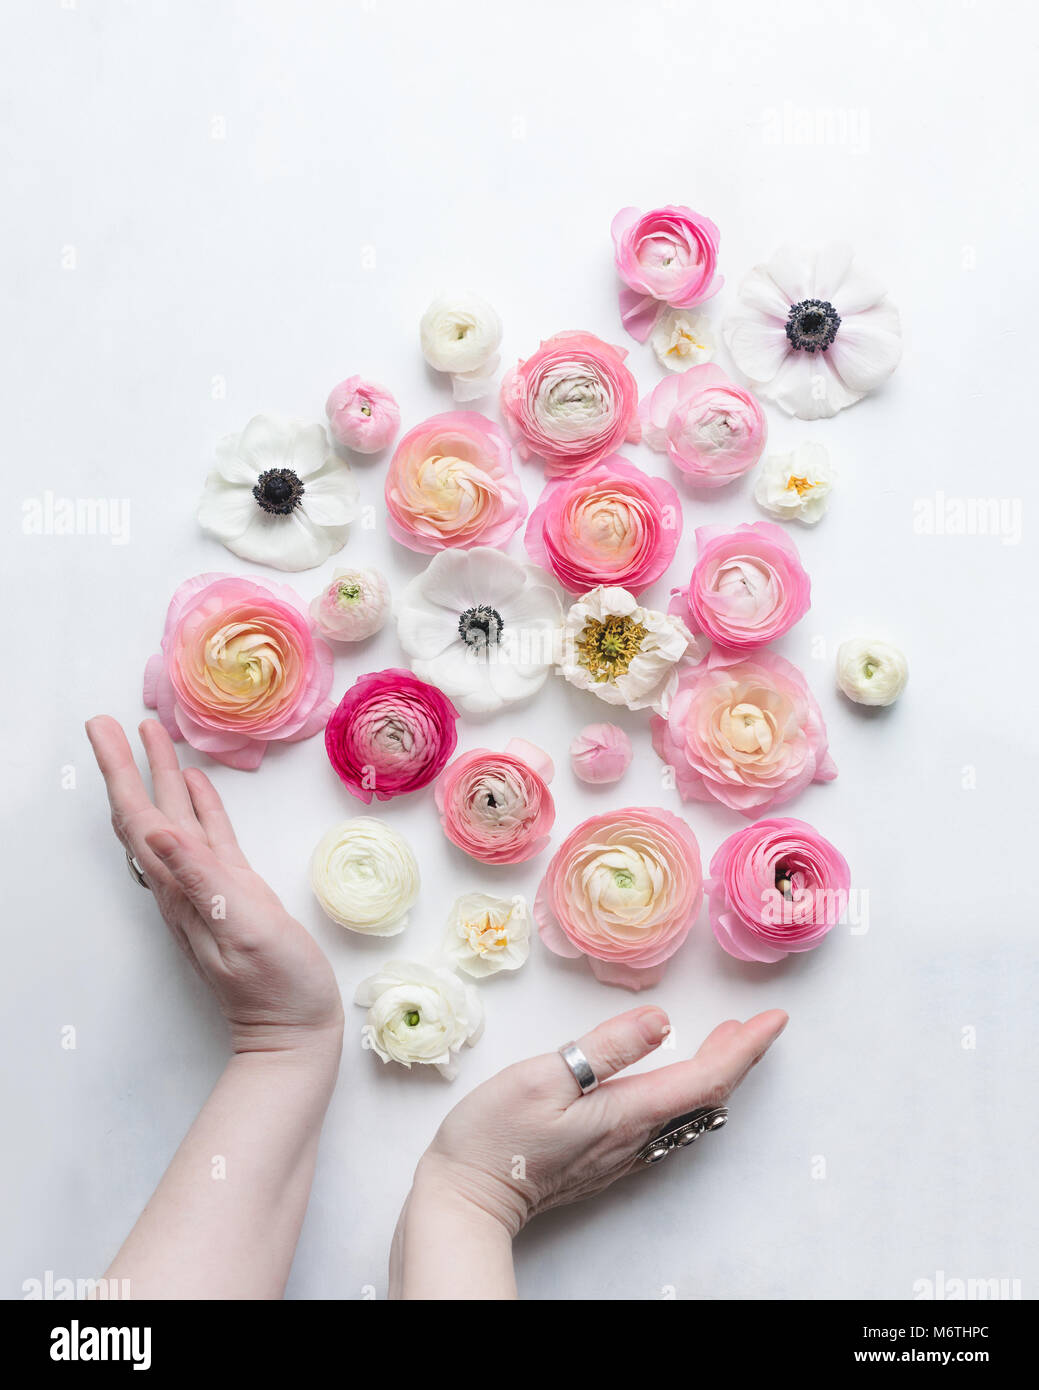 Blanco y rosa flores de primavera que parecen caer en dos manos, visto desde arriba, luz natural Foto de stock